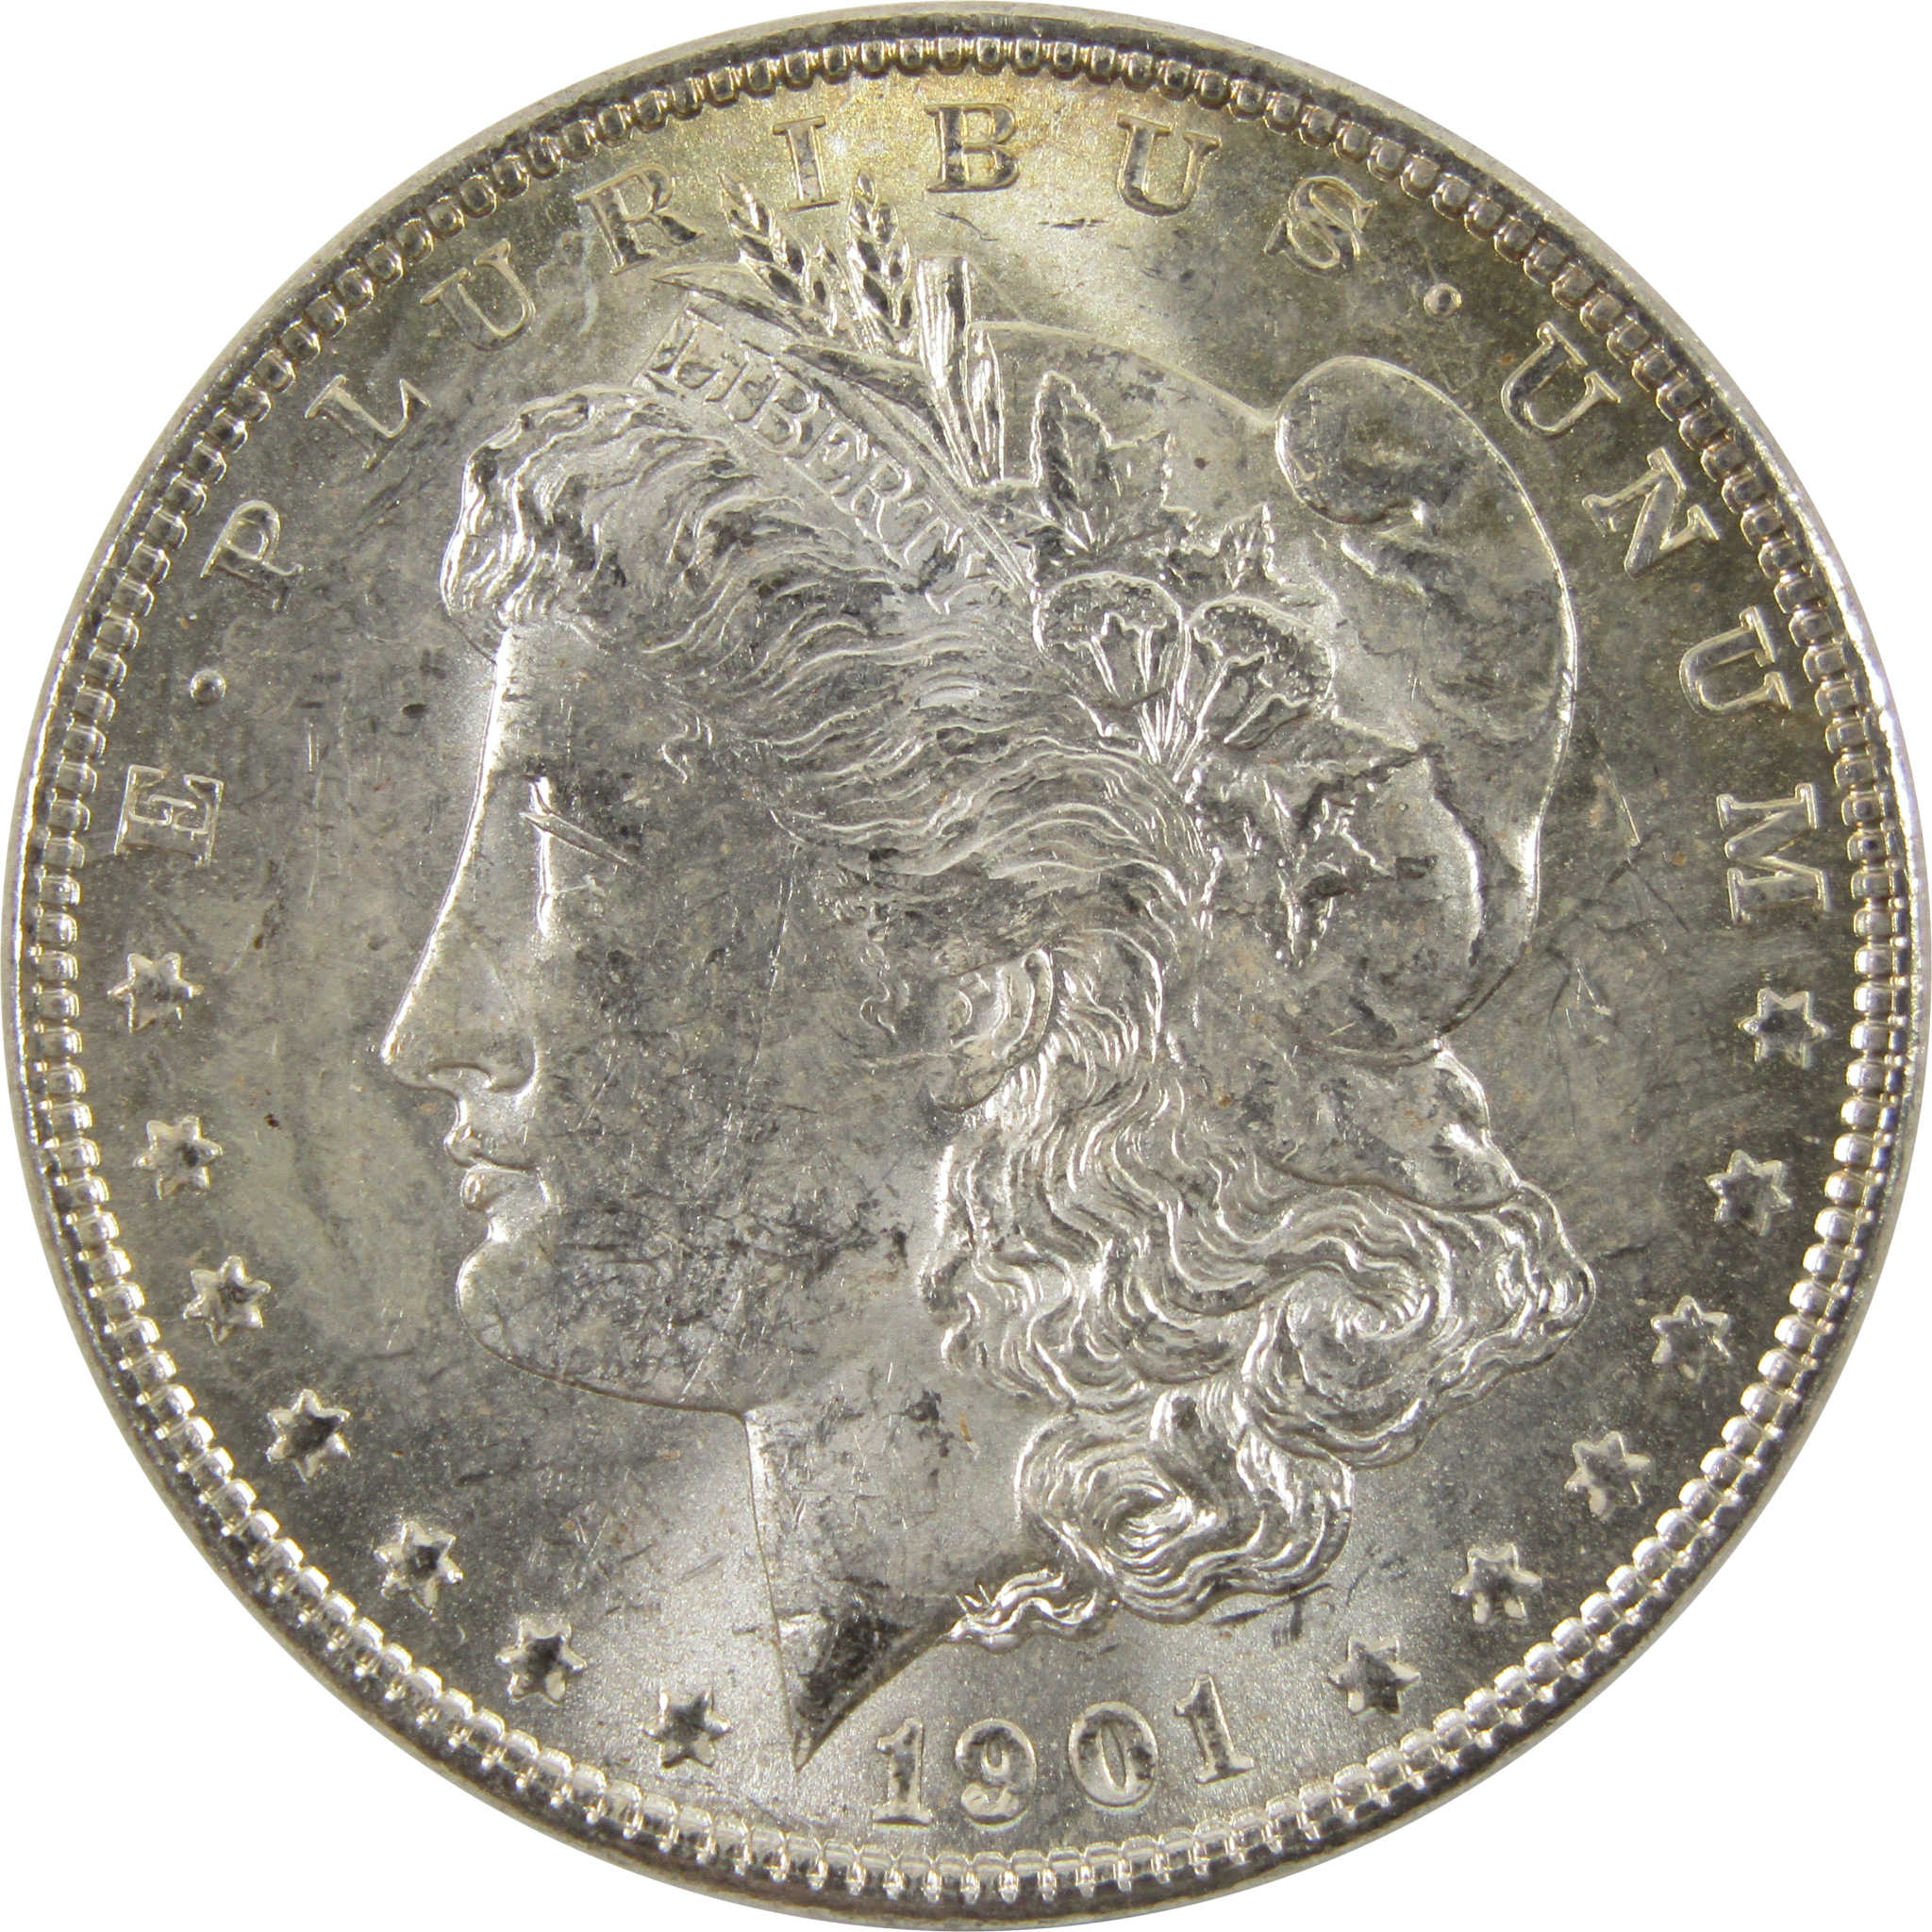 1901 O Morgan Dollar BU Uncirculated 90% Silver $1 Coin SKU:I10471 - Morgan coin - Morgan silver dollar - Morgan silver dollar for sale - Profile Coins &amp; Collectibles